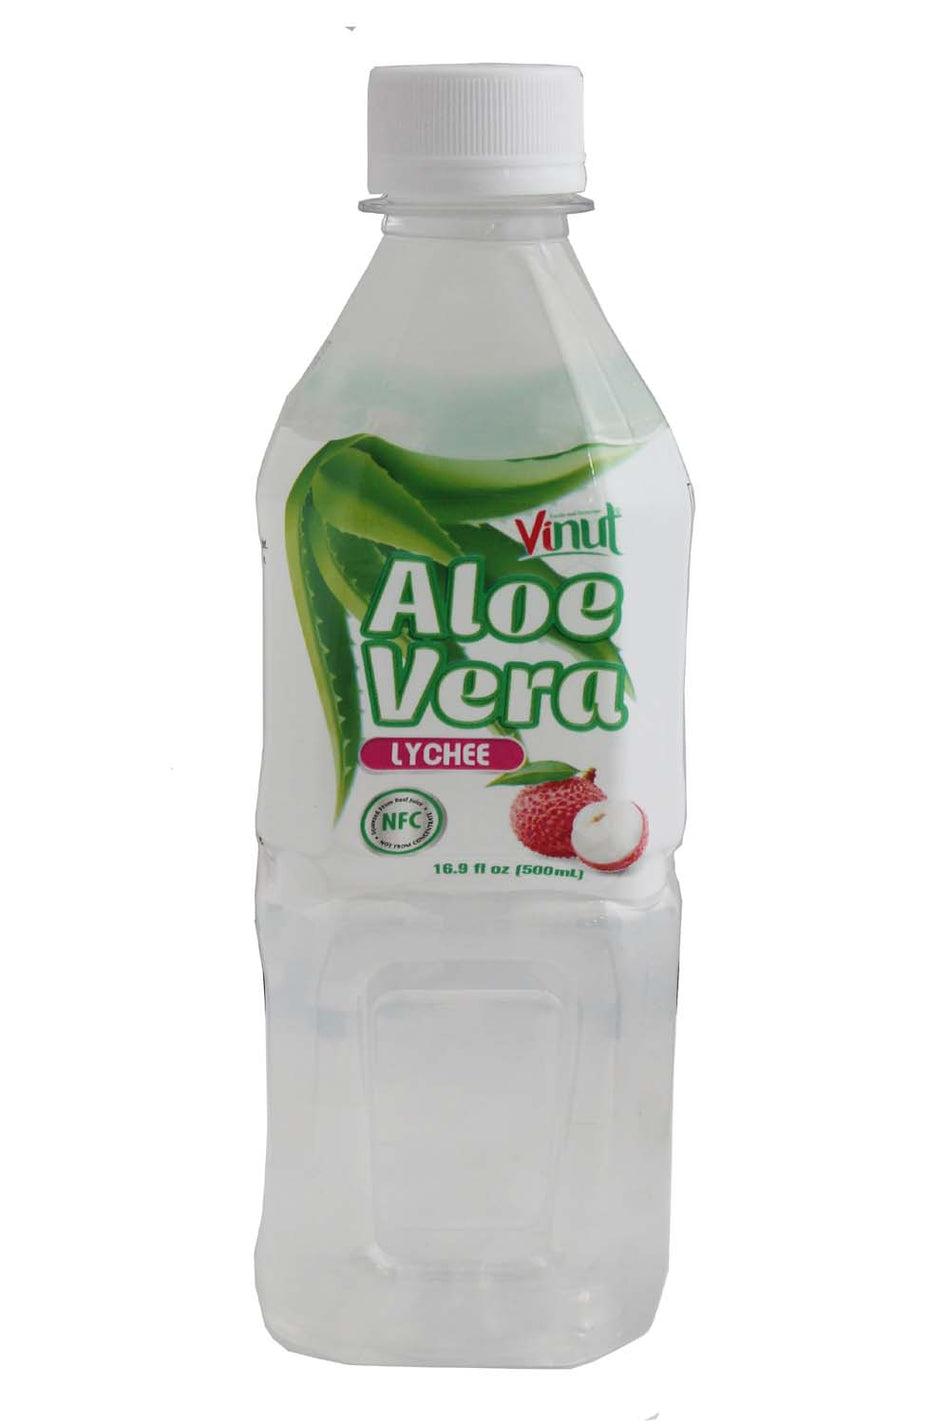 Vinut Aloe Vera Lychee Flavored Drink